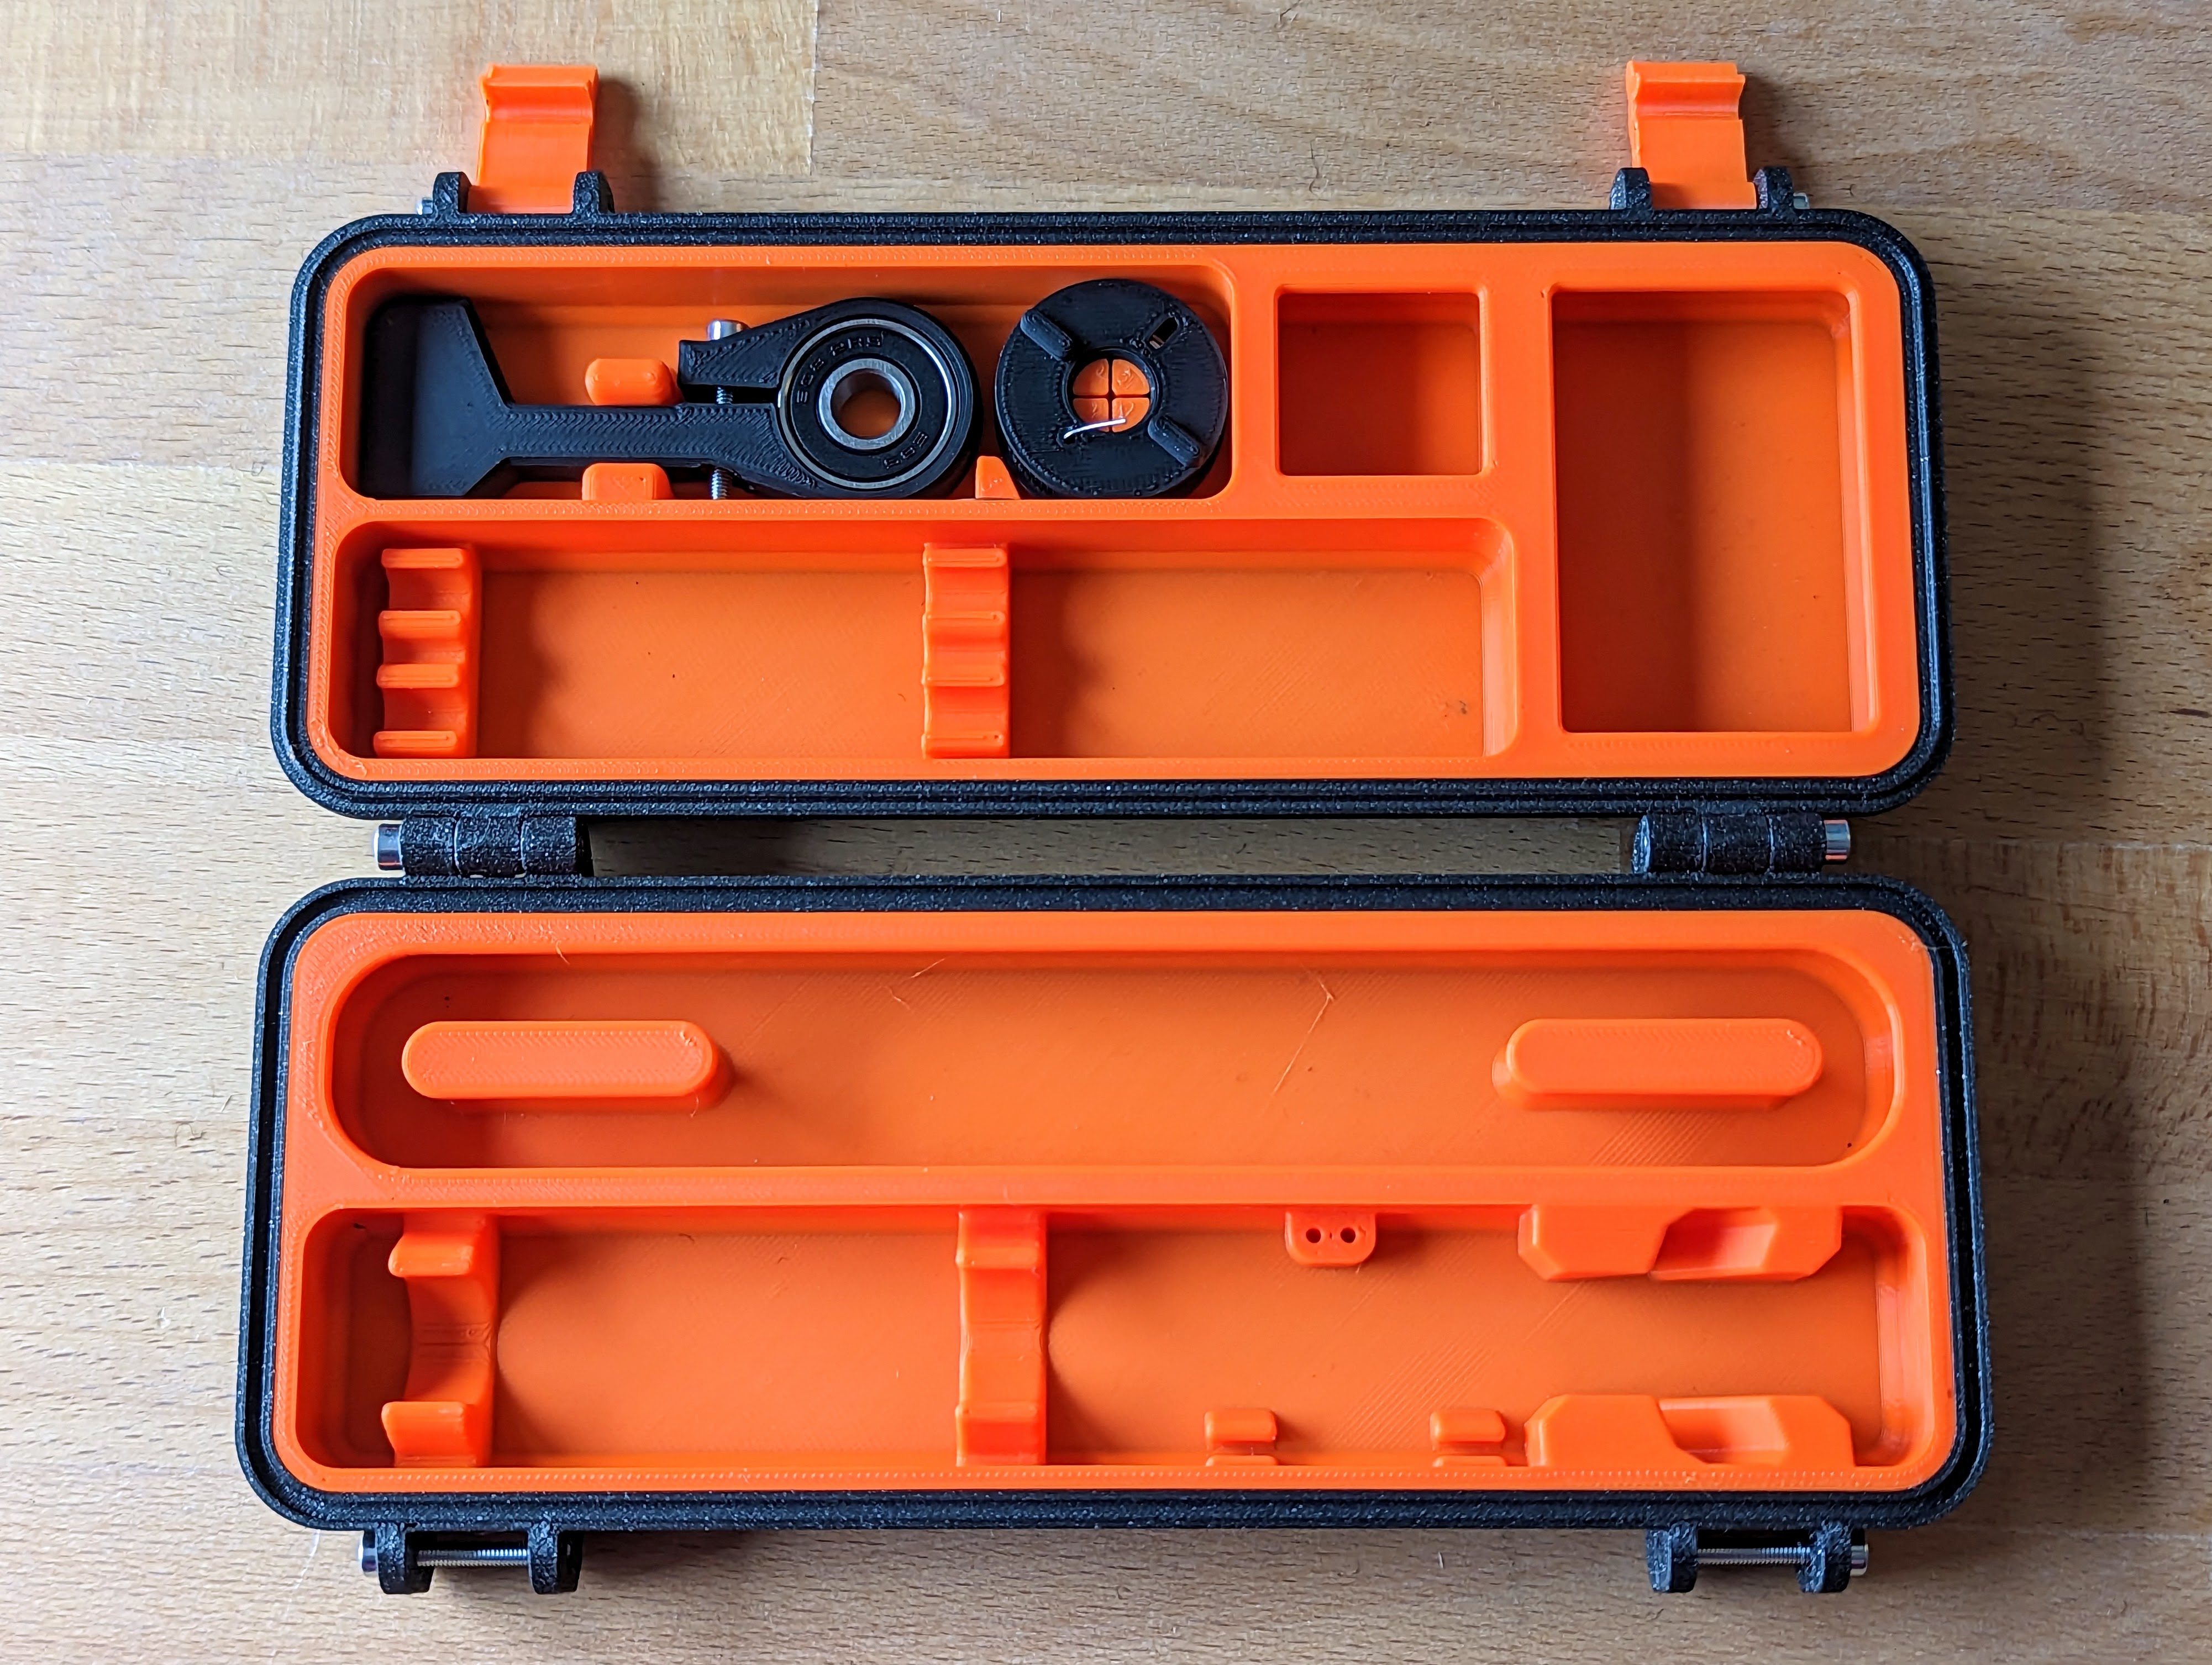 Robuster Case-Bausatz für den Pinecil - Alles sauber und perfekt verpackt